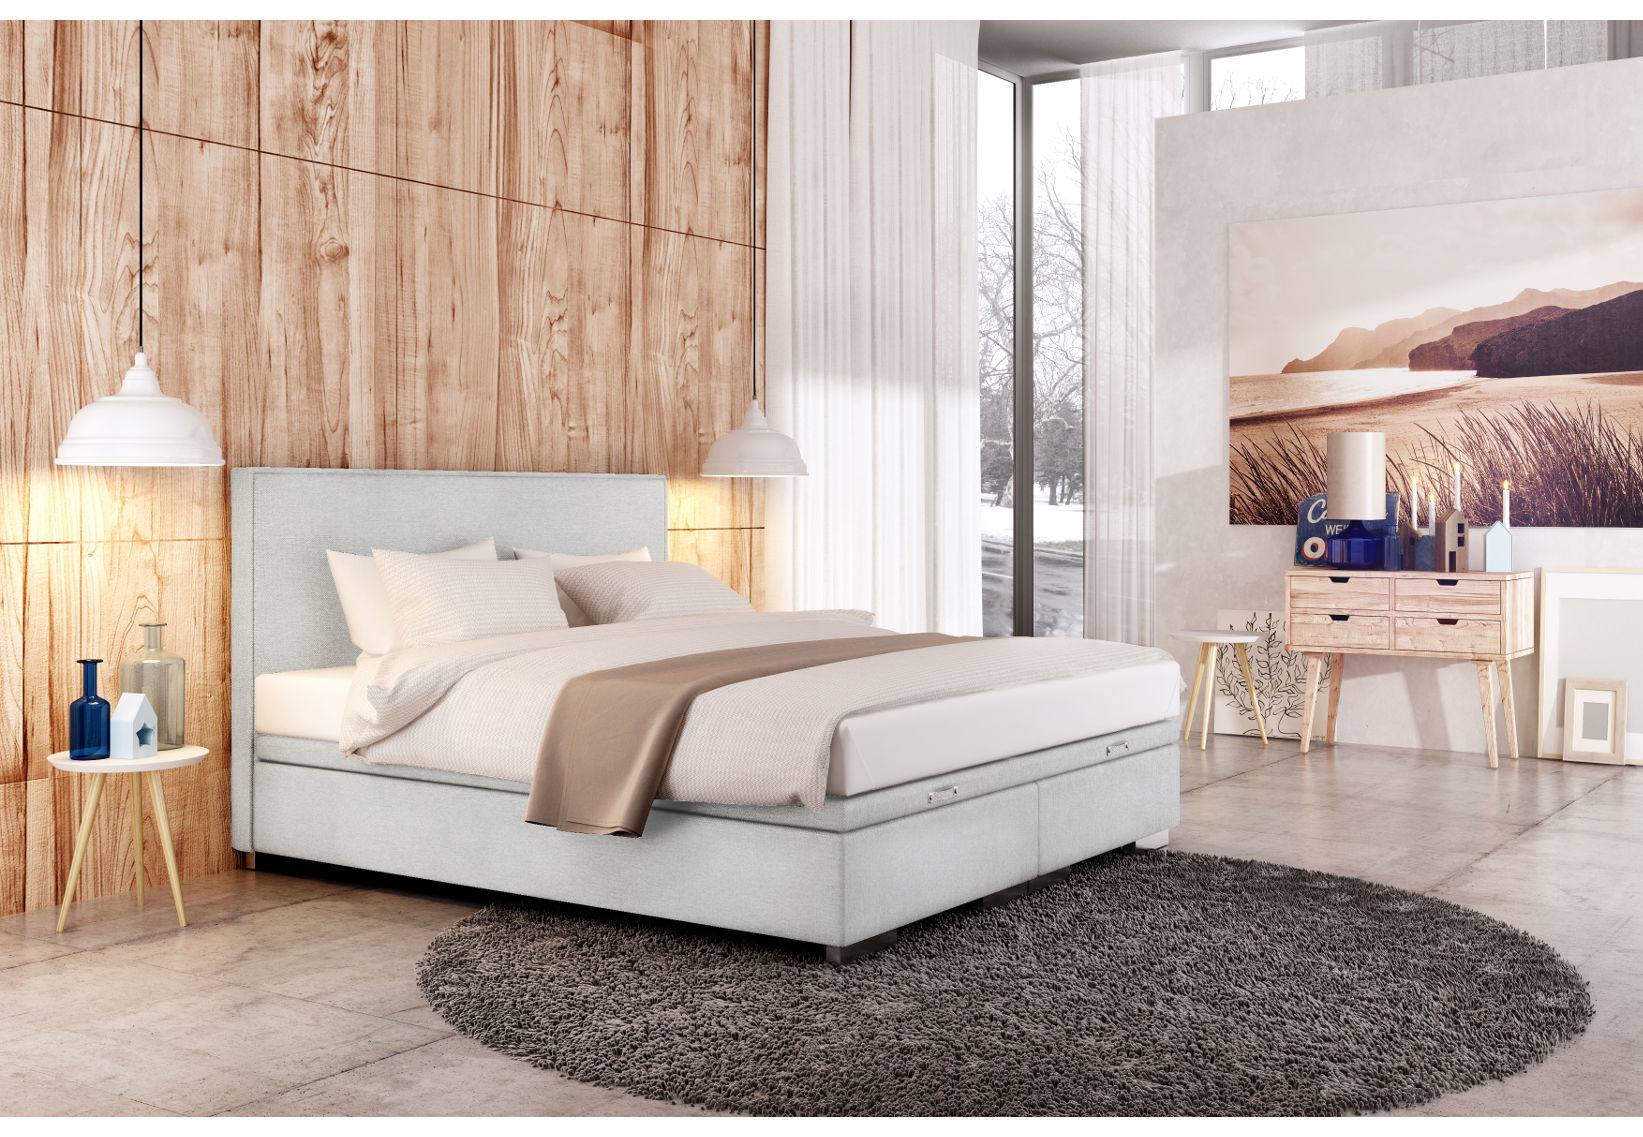 Континентальная кровать - это мебель для спальни, которая является синонимом роскоши